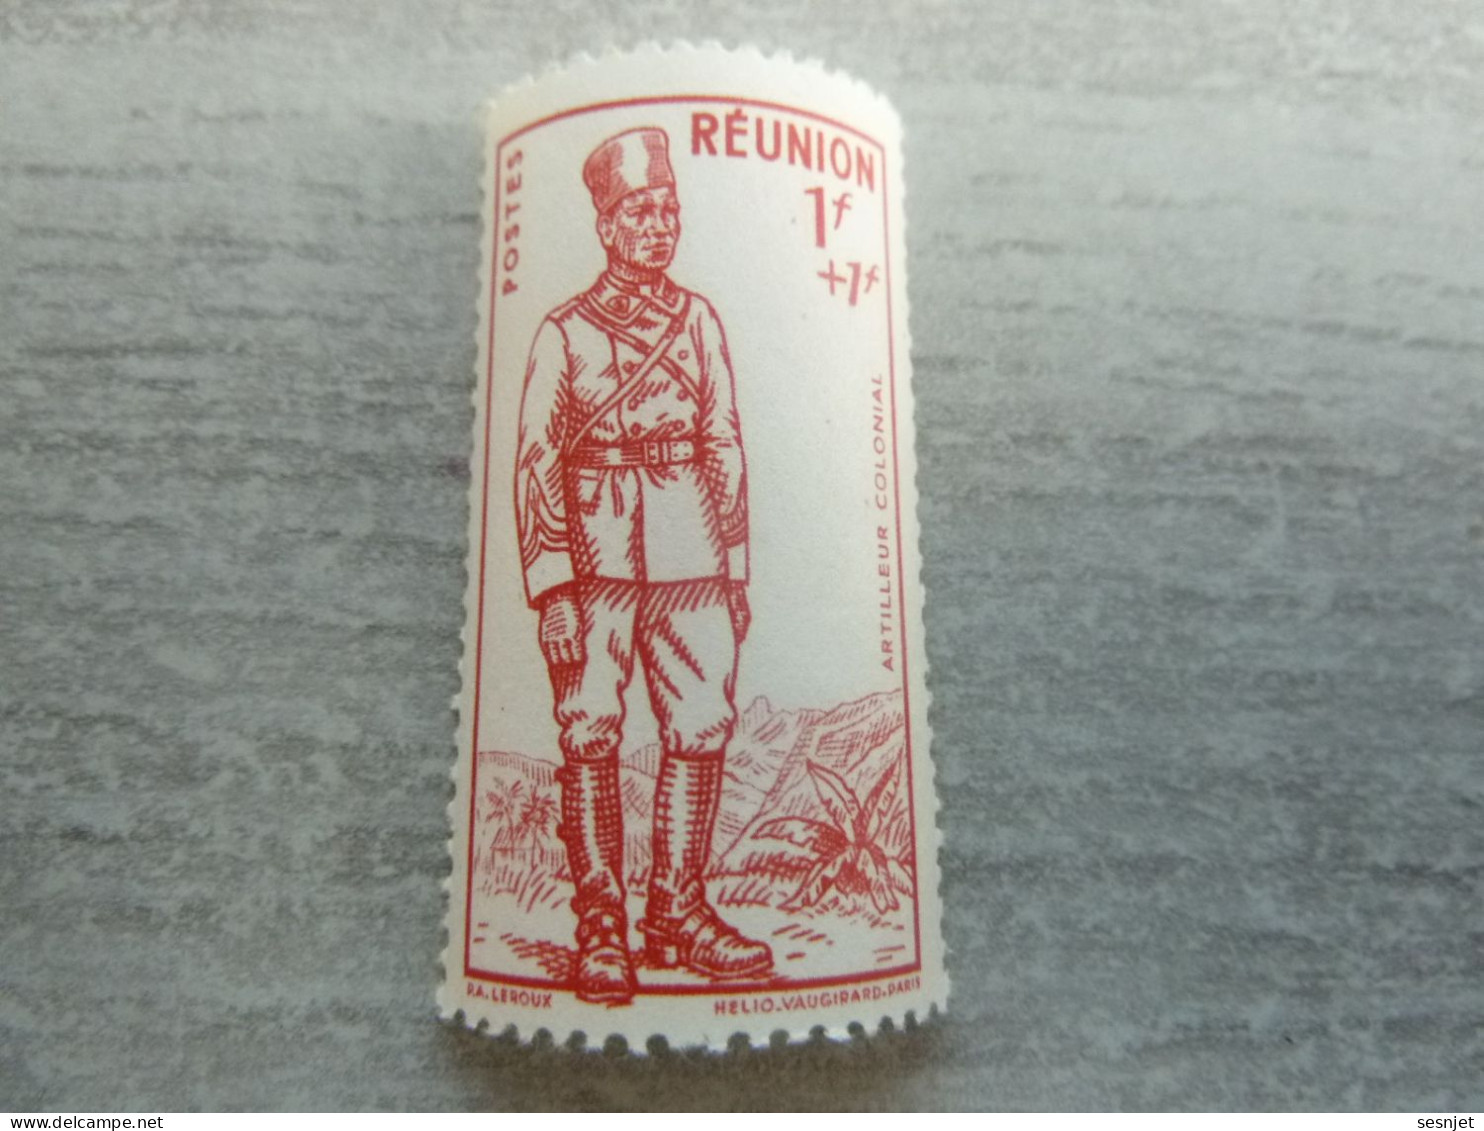 La Réunion - Défense De L'Empire - Artilleur Colonial - 1f.+1f -  Yt 175 - He. Vaugirard - Rouge - Neuf - Année 1941 - - Unused Stamps